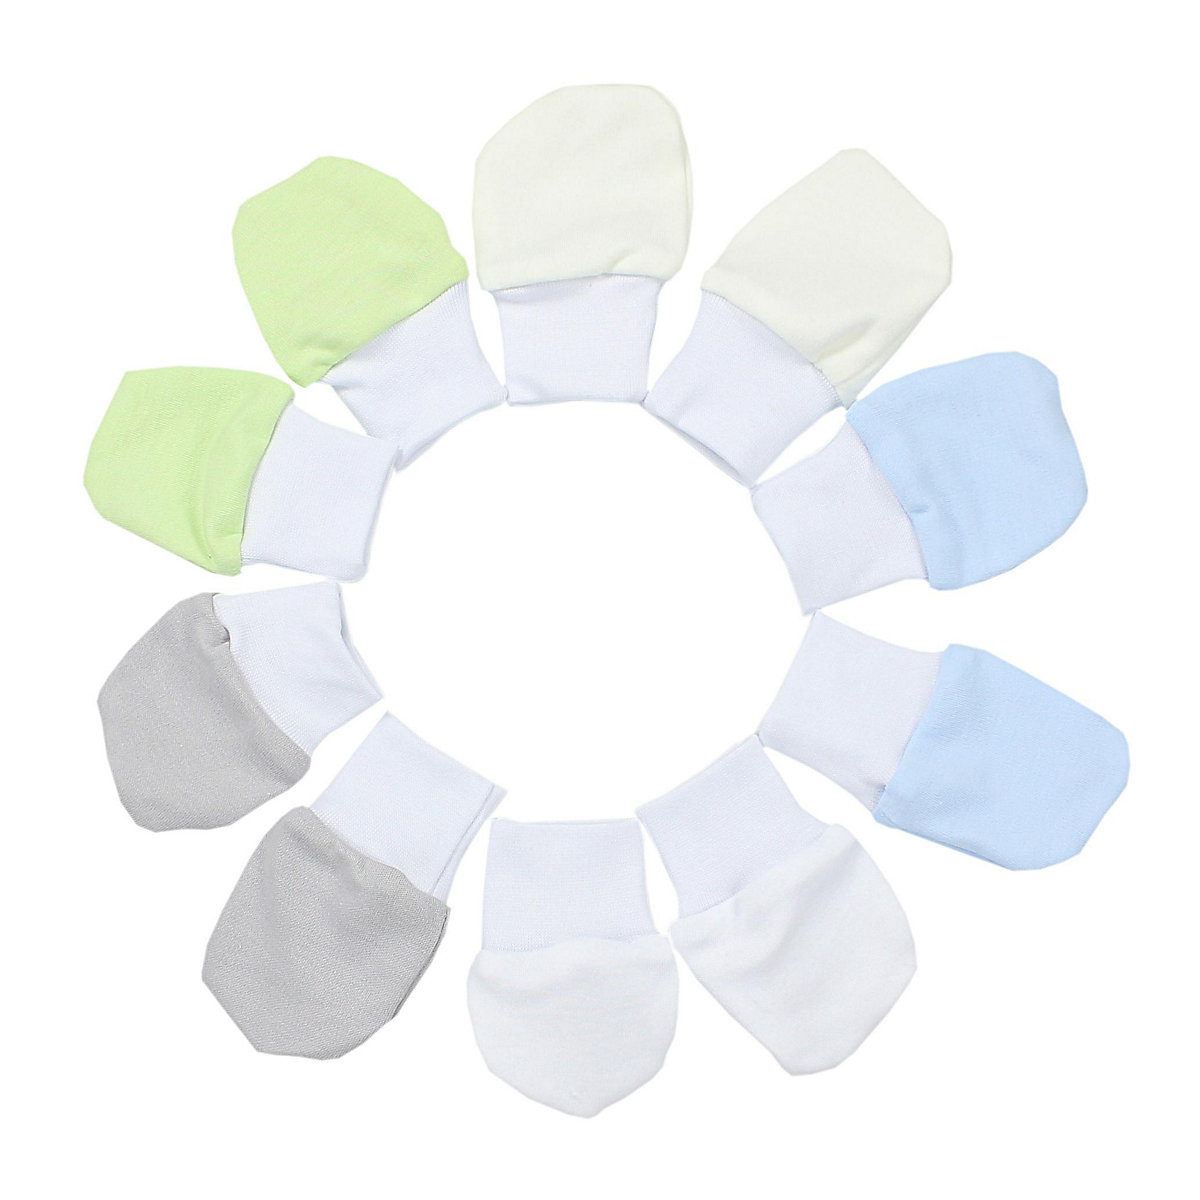 TupTam Baby Handschuhe Neugeborene Kratzhandschuhe für Kinder blau/grün